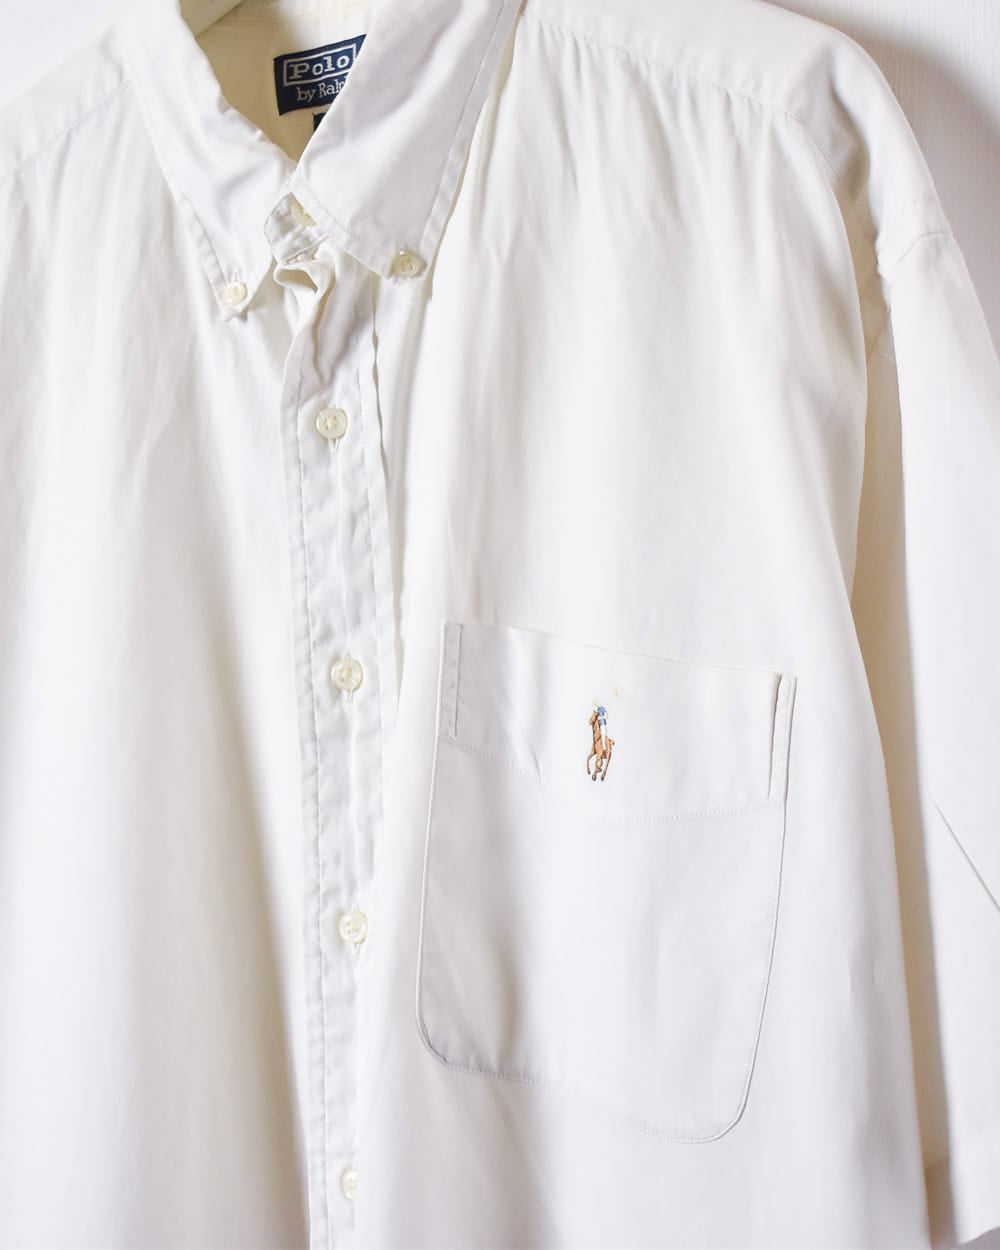 White Polo Ralph Lauren Blake Short Sleeved Shirt - X-Large